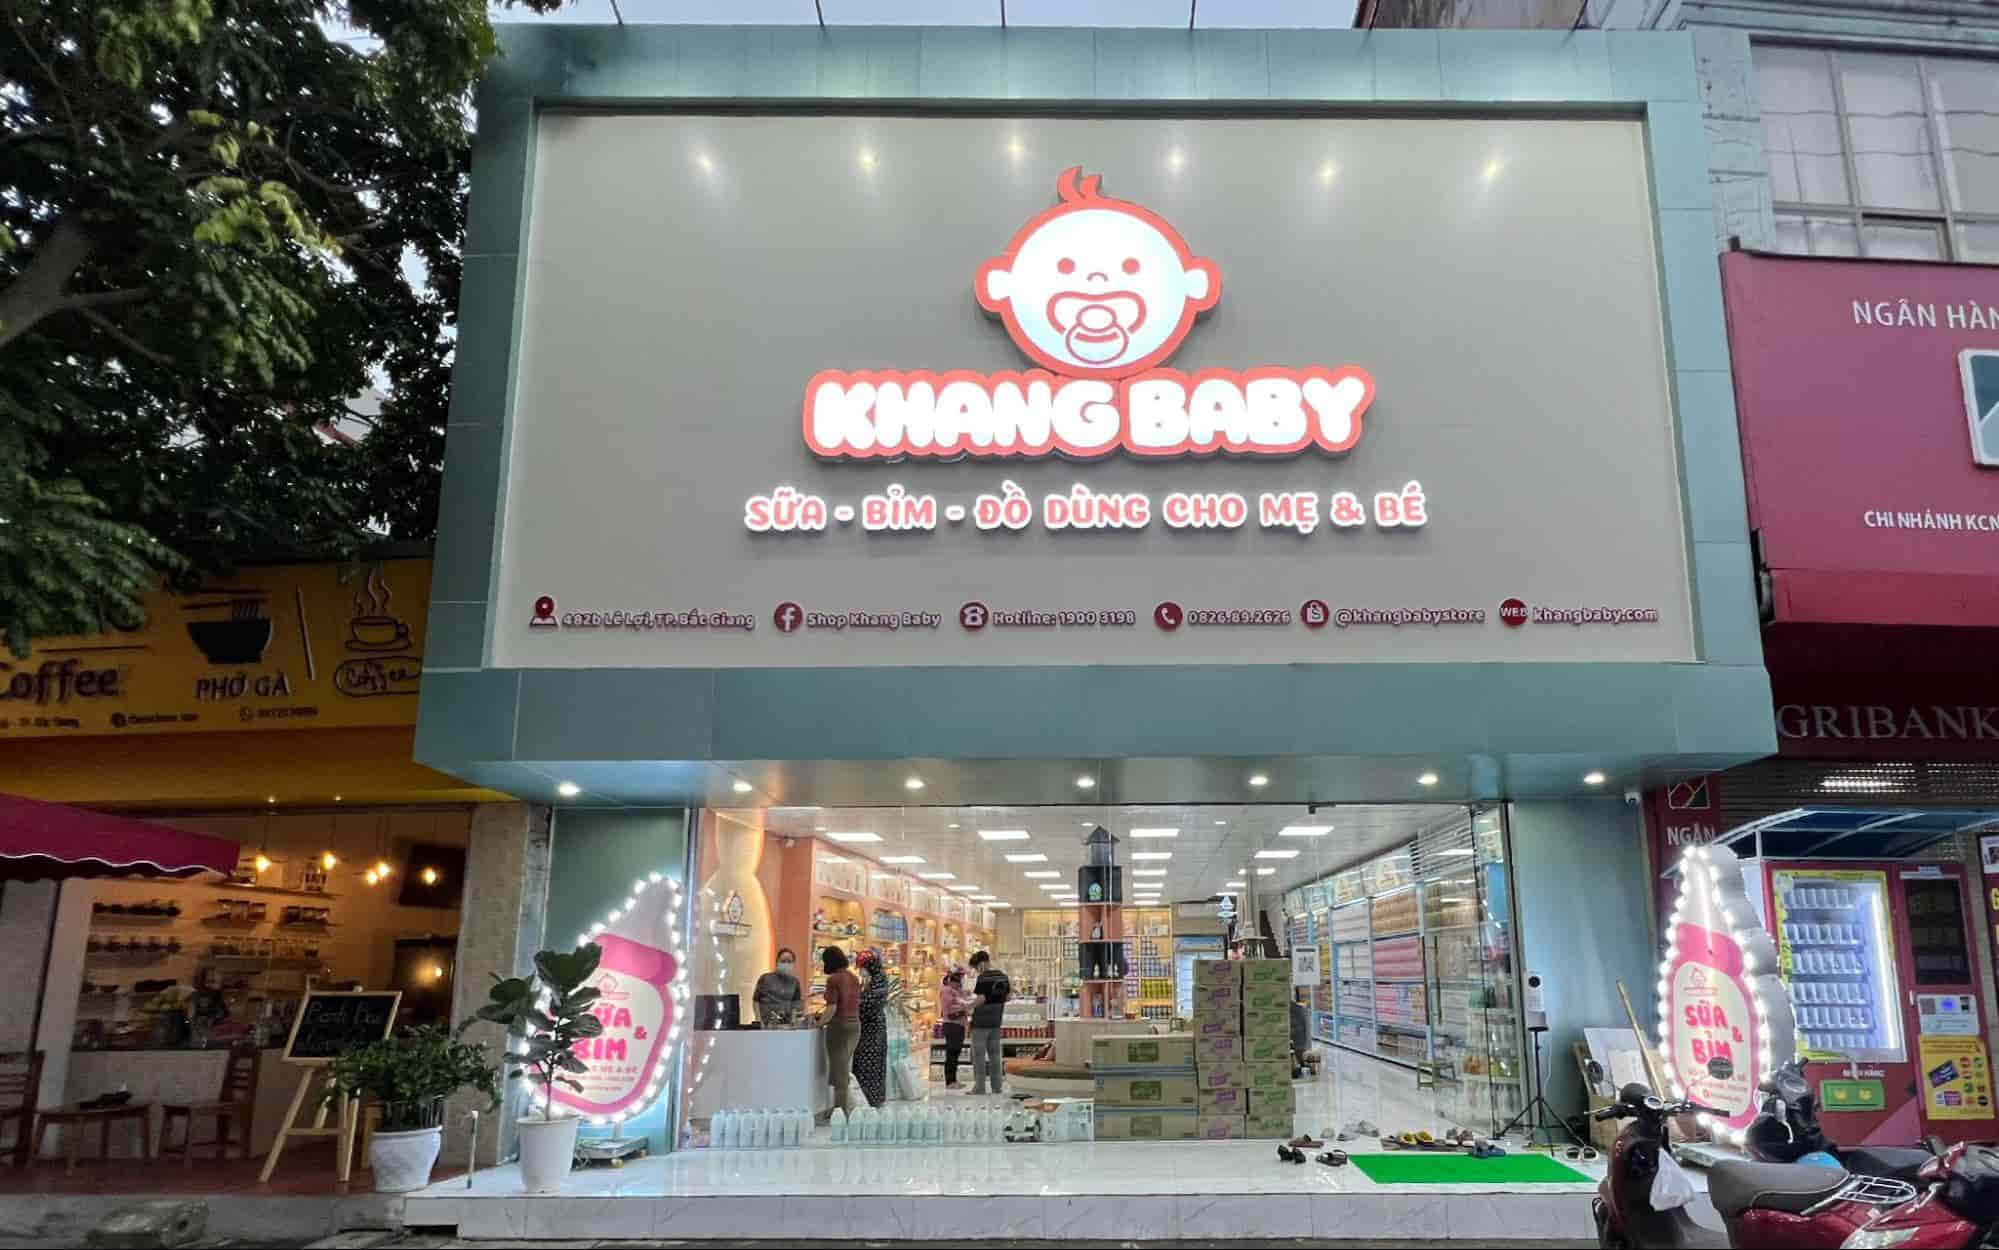 Khang Baby – Chuỗi cửa hàng mẹ và bé uy tín, chất lượng - 1